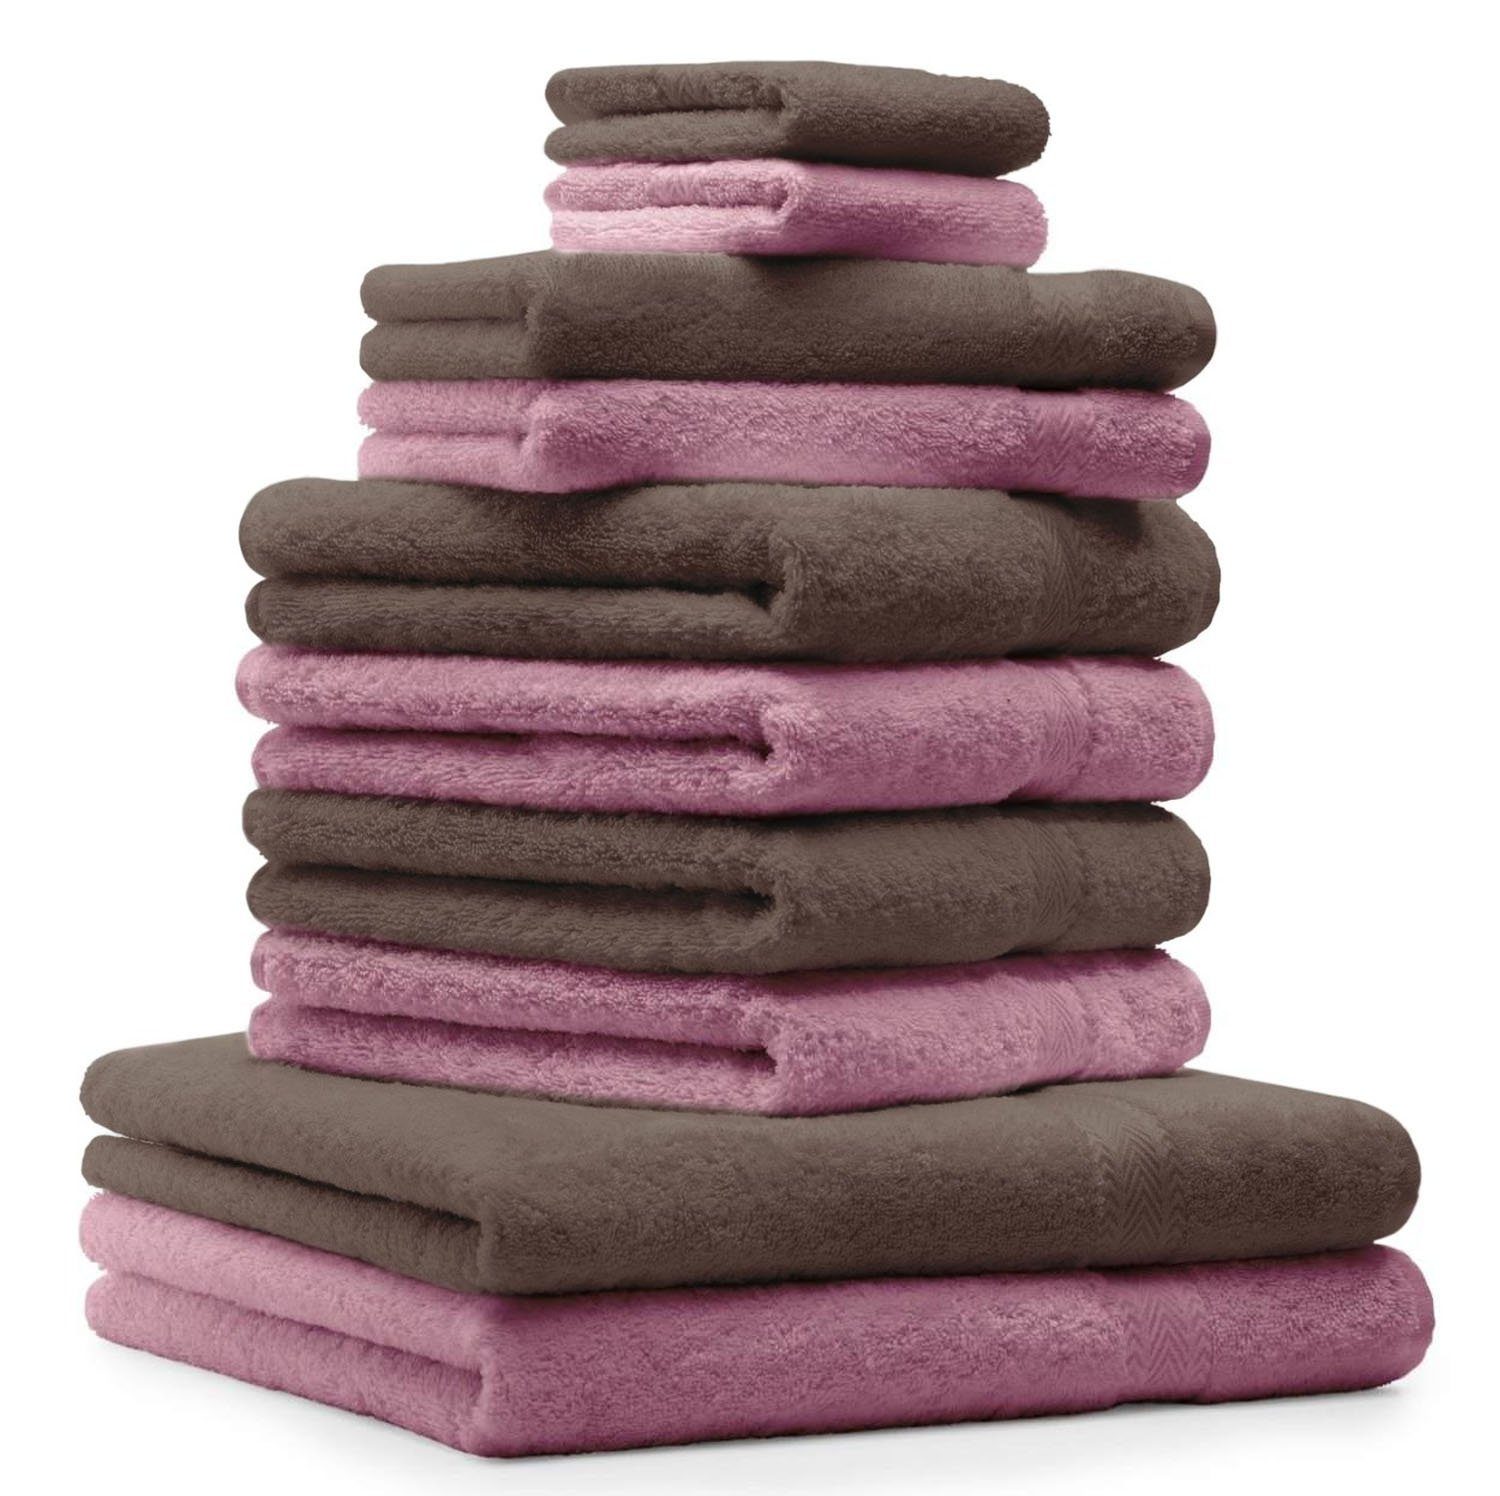 Betz Handtuch Set 10-TLG. Handtuch-Set Classic Farbe altrosa und nussbraun, 100% Baumwolle